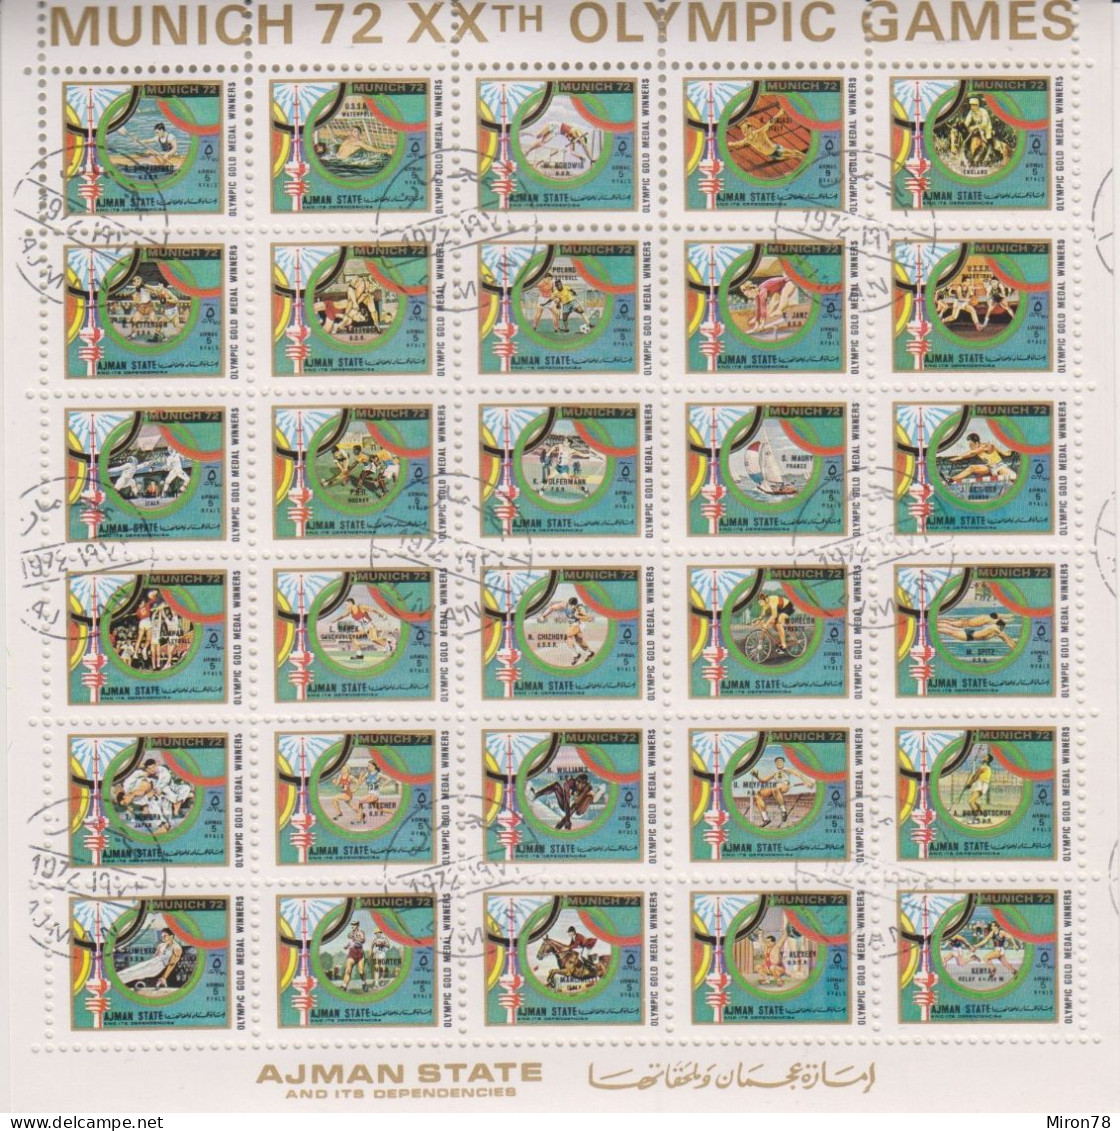 AJMAN 1972: Olympische Spiele MiNr. 1605-1634 Used - Sommer 1972: München